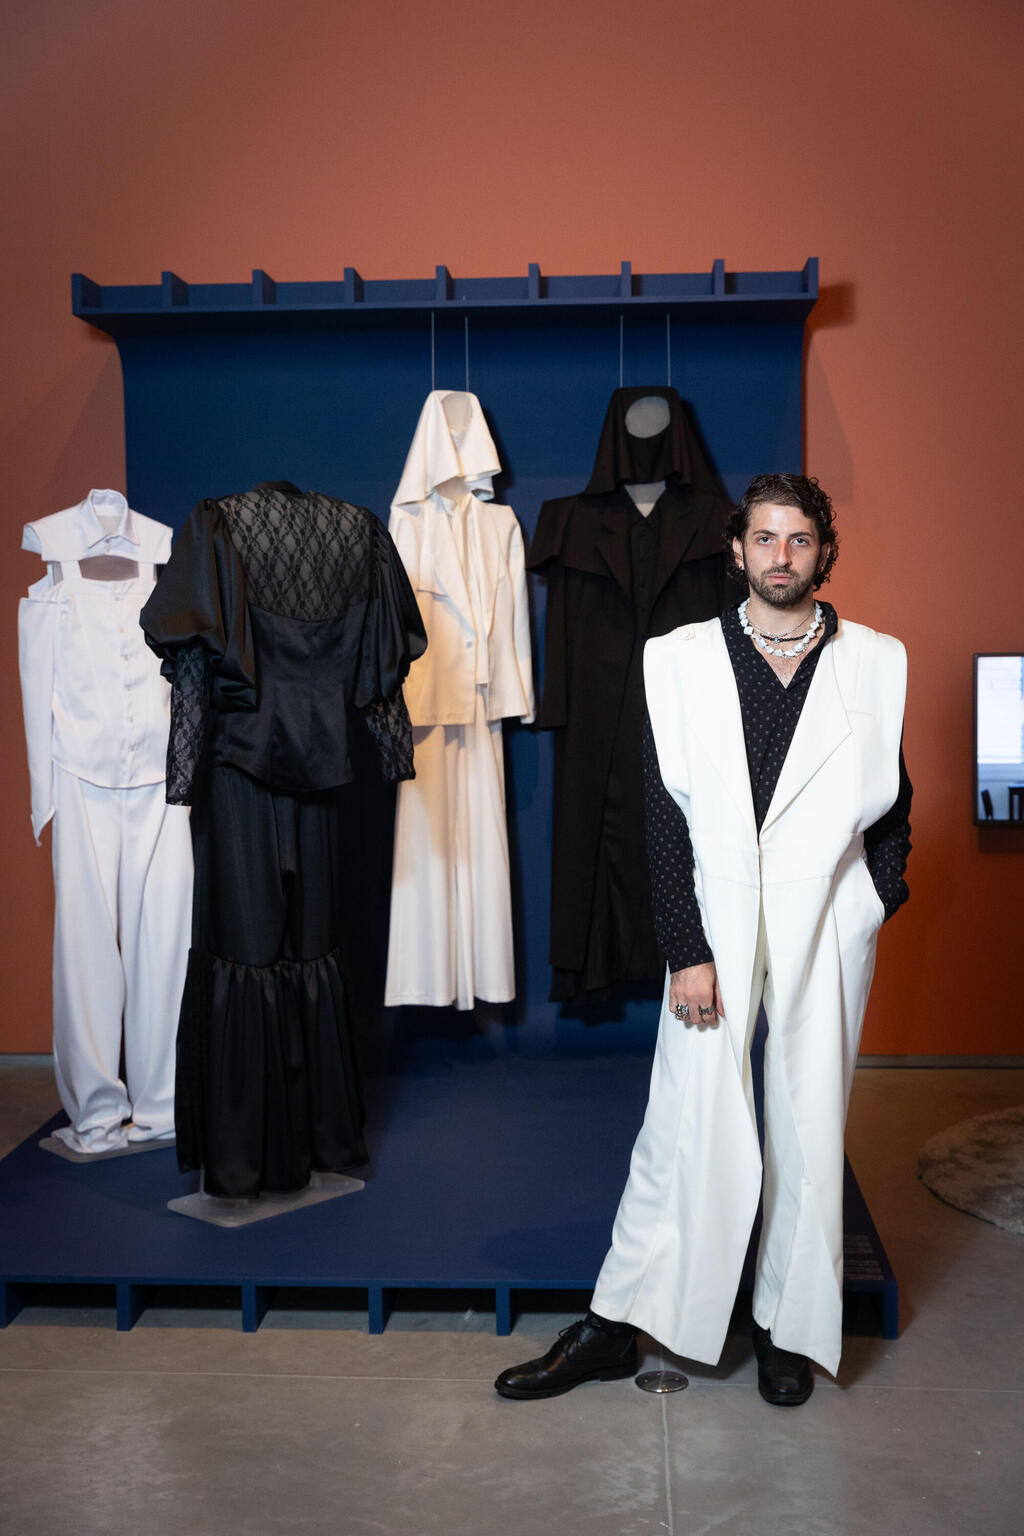 שאדי פרנסיס מג'לטון בתערוכה "מעצבים בערבית" במוזיאון ישראל, ירושלים